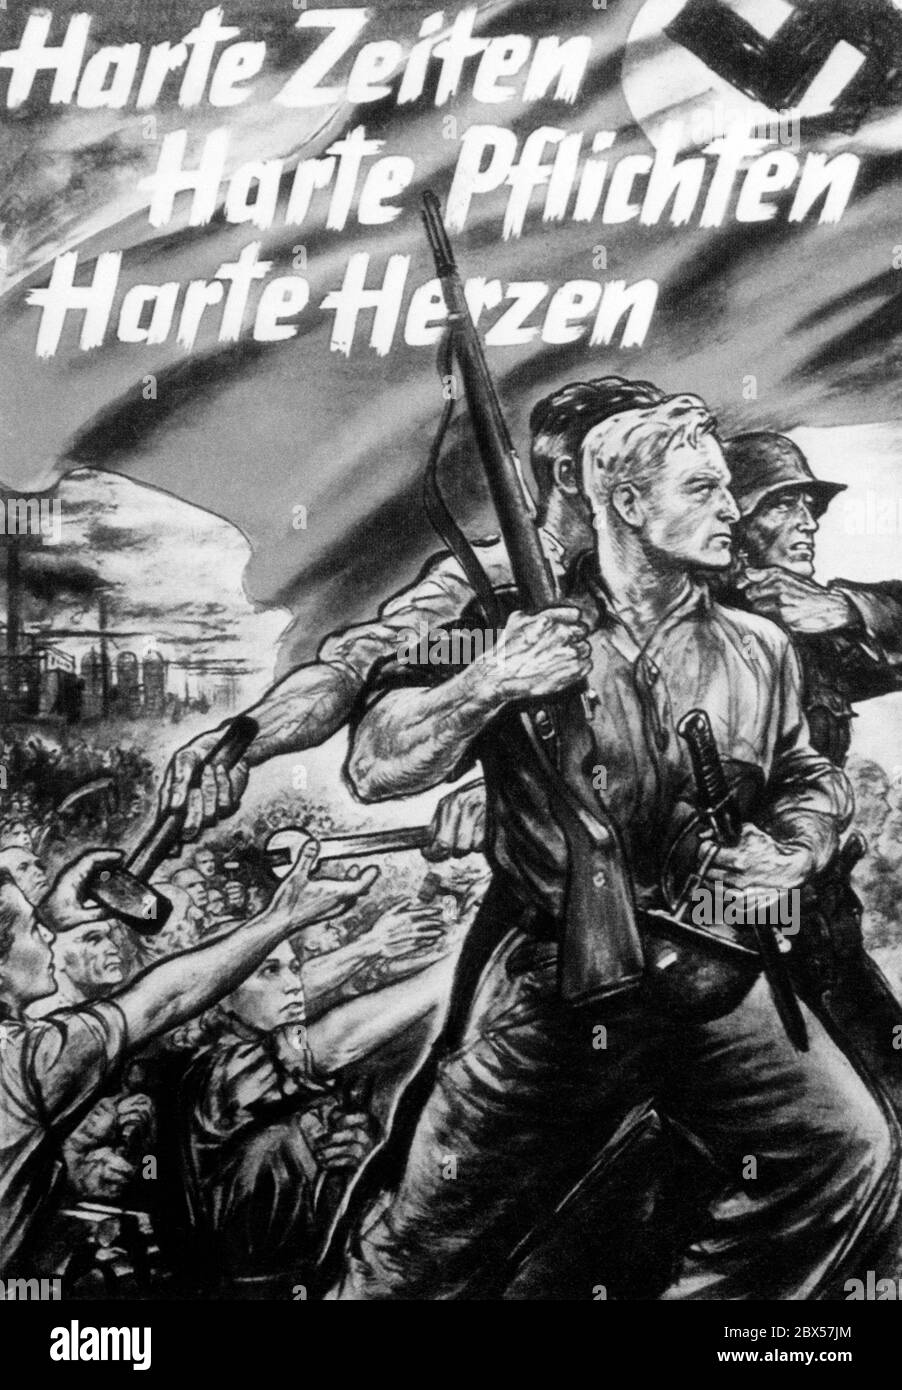 Mit der Ausrufung des "totalen Krieges" 1943 nach der Niederlage in Stalingrad begann eine endlose Propaganda, die die verbleibenden Kräfte für den Krieg mobilisieren sollte. Stockfoto